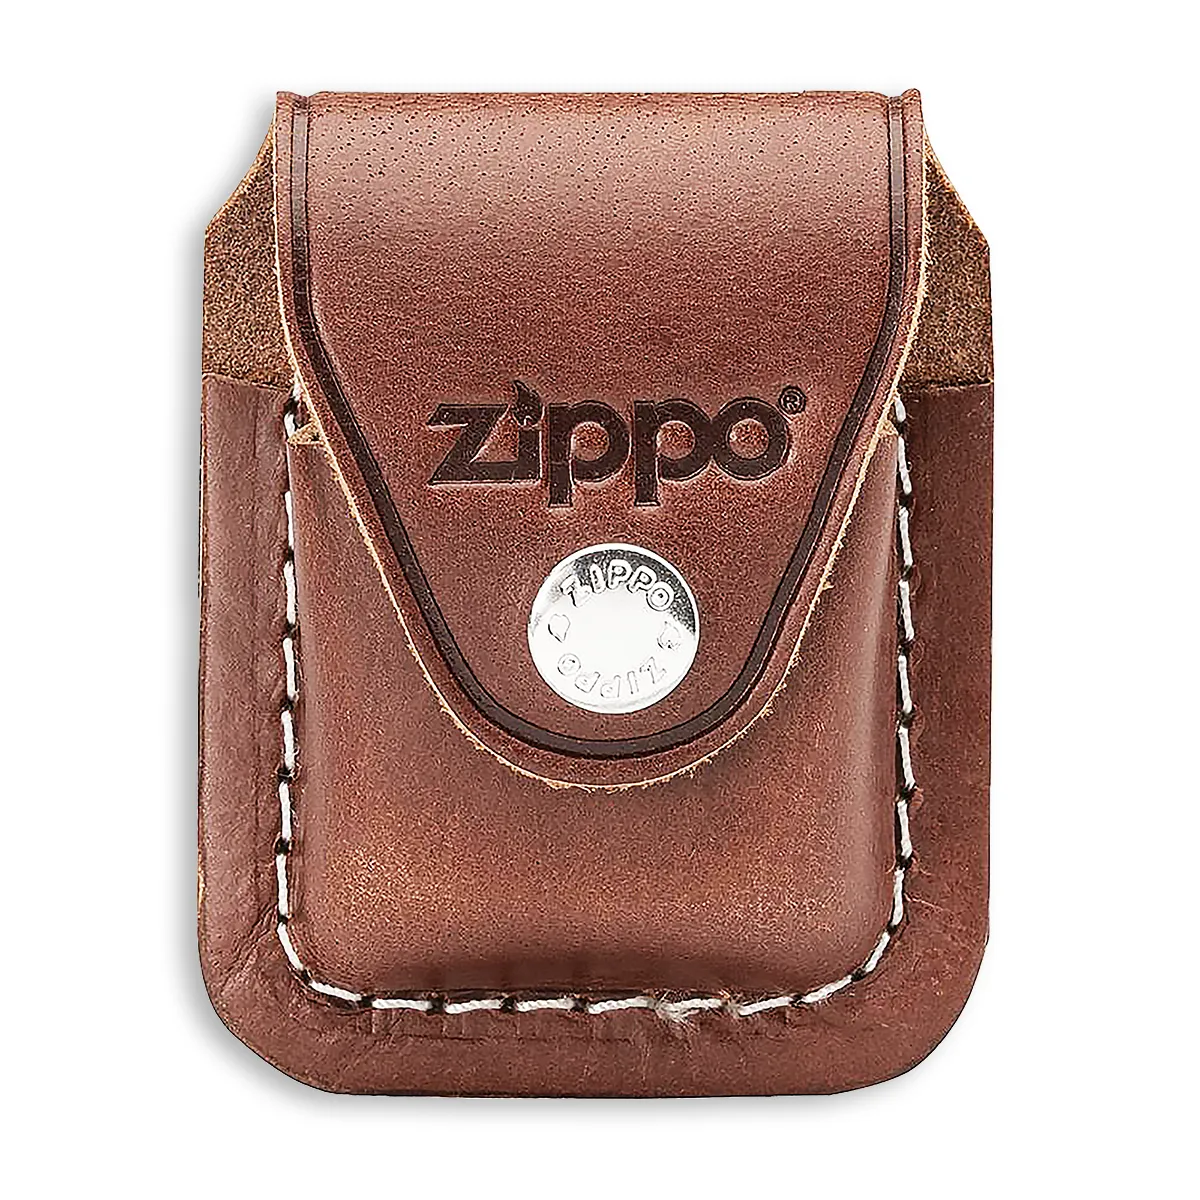 Zippo Tasche braun mit Clip